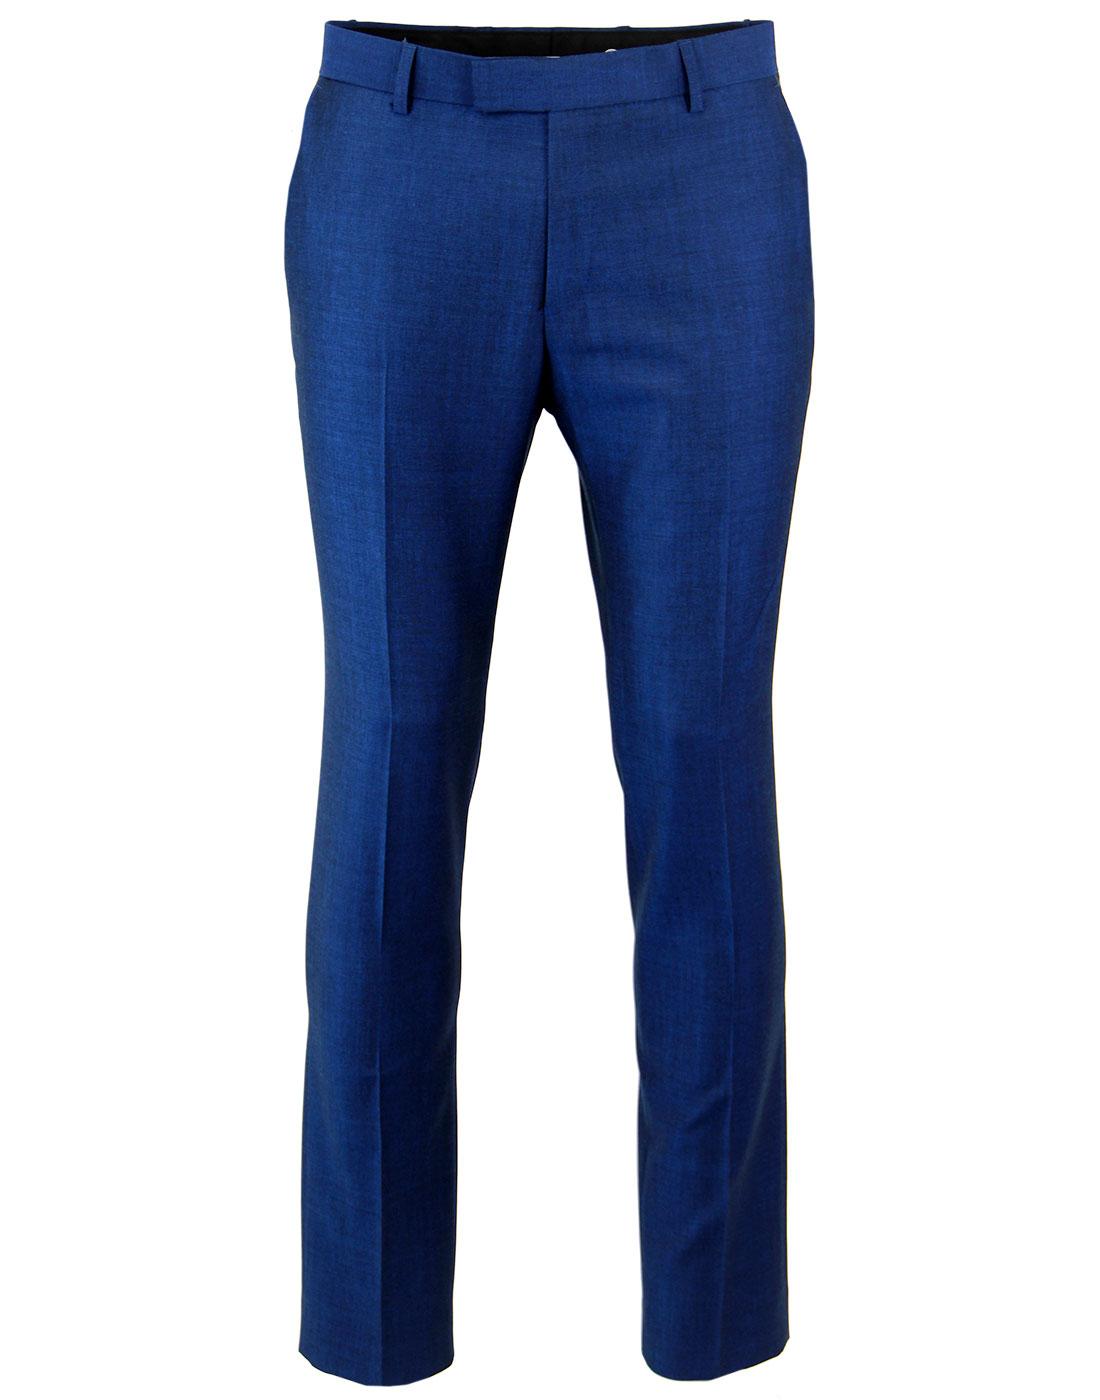 MADCAP ENGLAND Mod Mohair Tonic Slim Suit Trousers